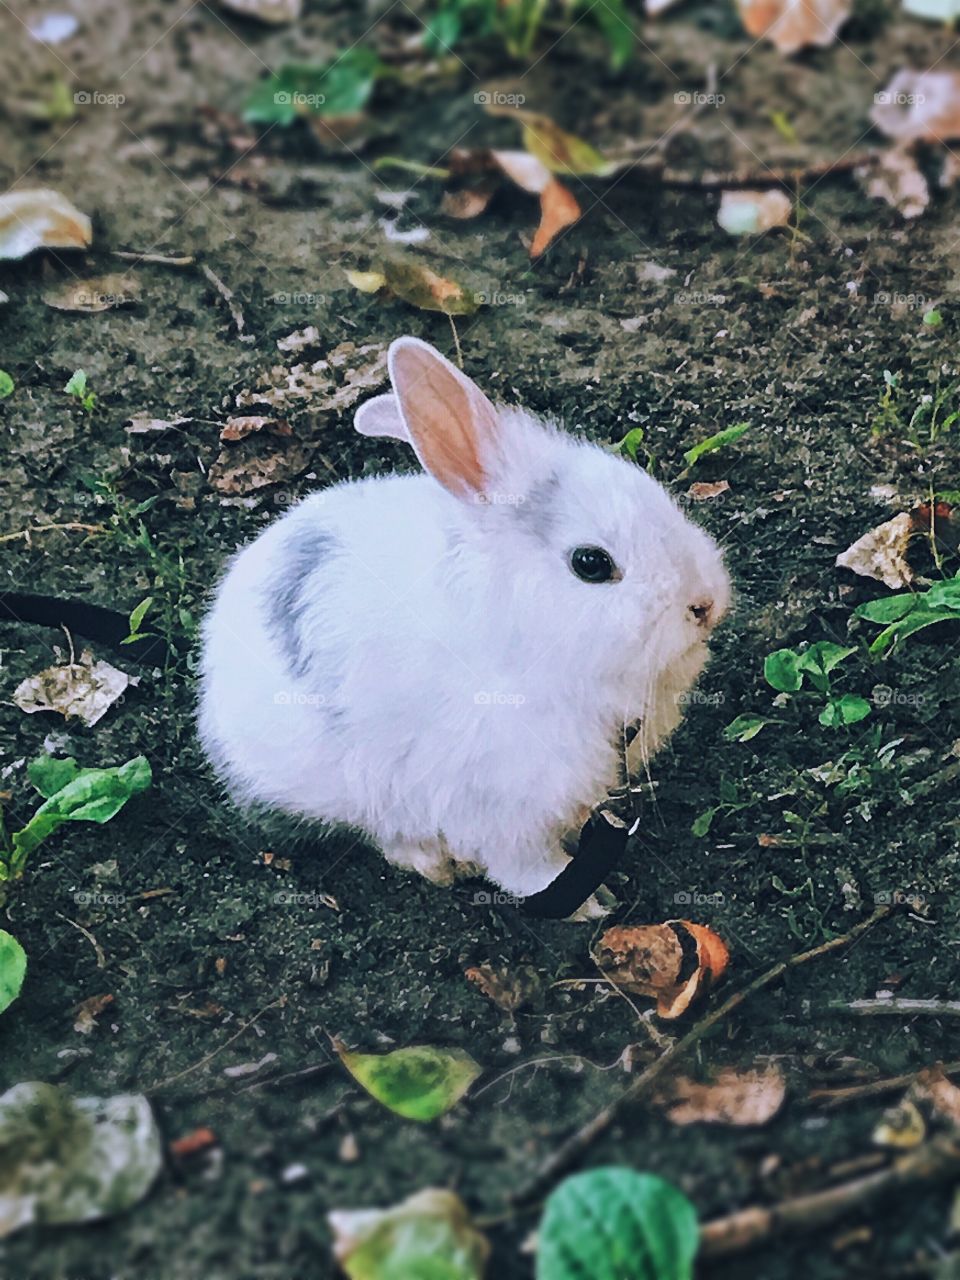 Little bunny ob the leash